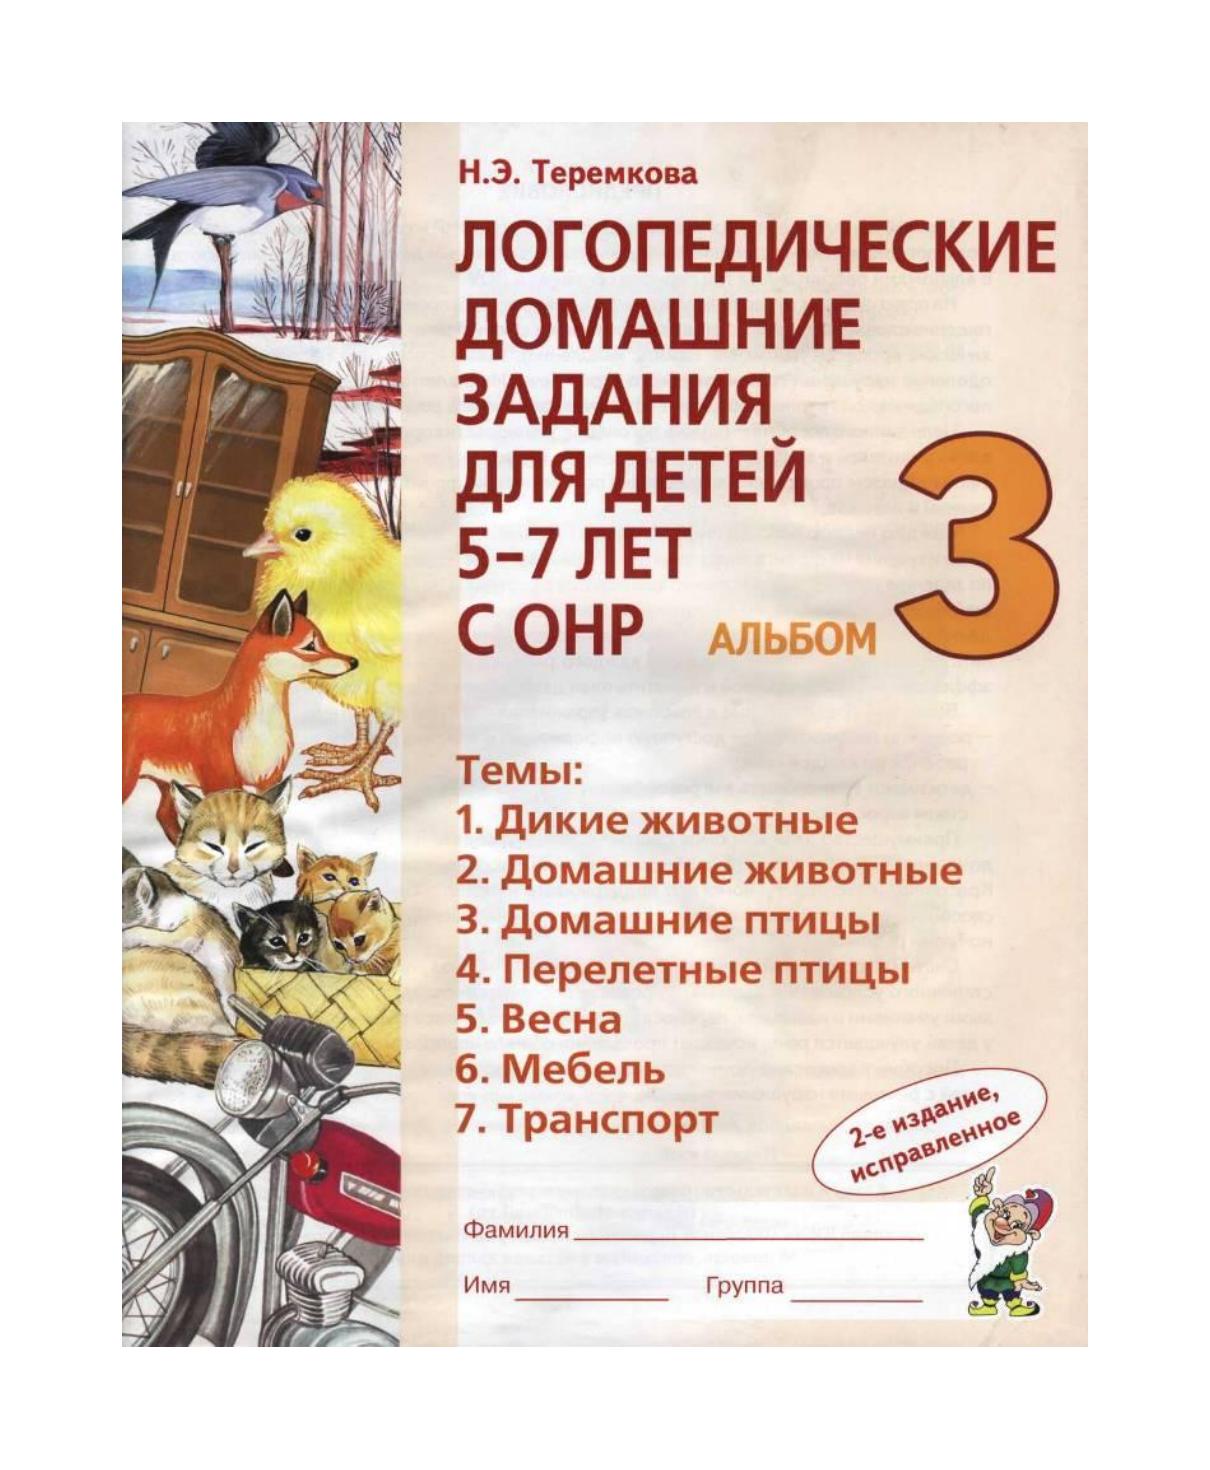 Скачать бесплатно логопедические домашние задания для детей 5-7 лет с онр альбом 1 теремкова н.э